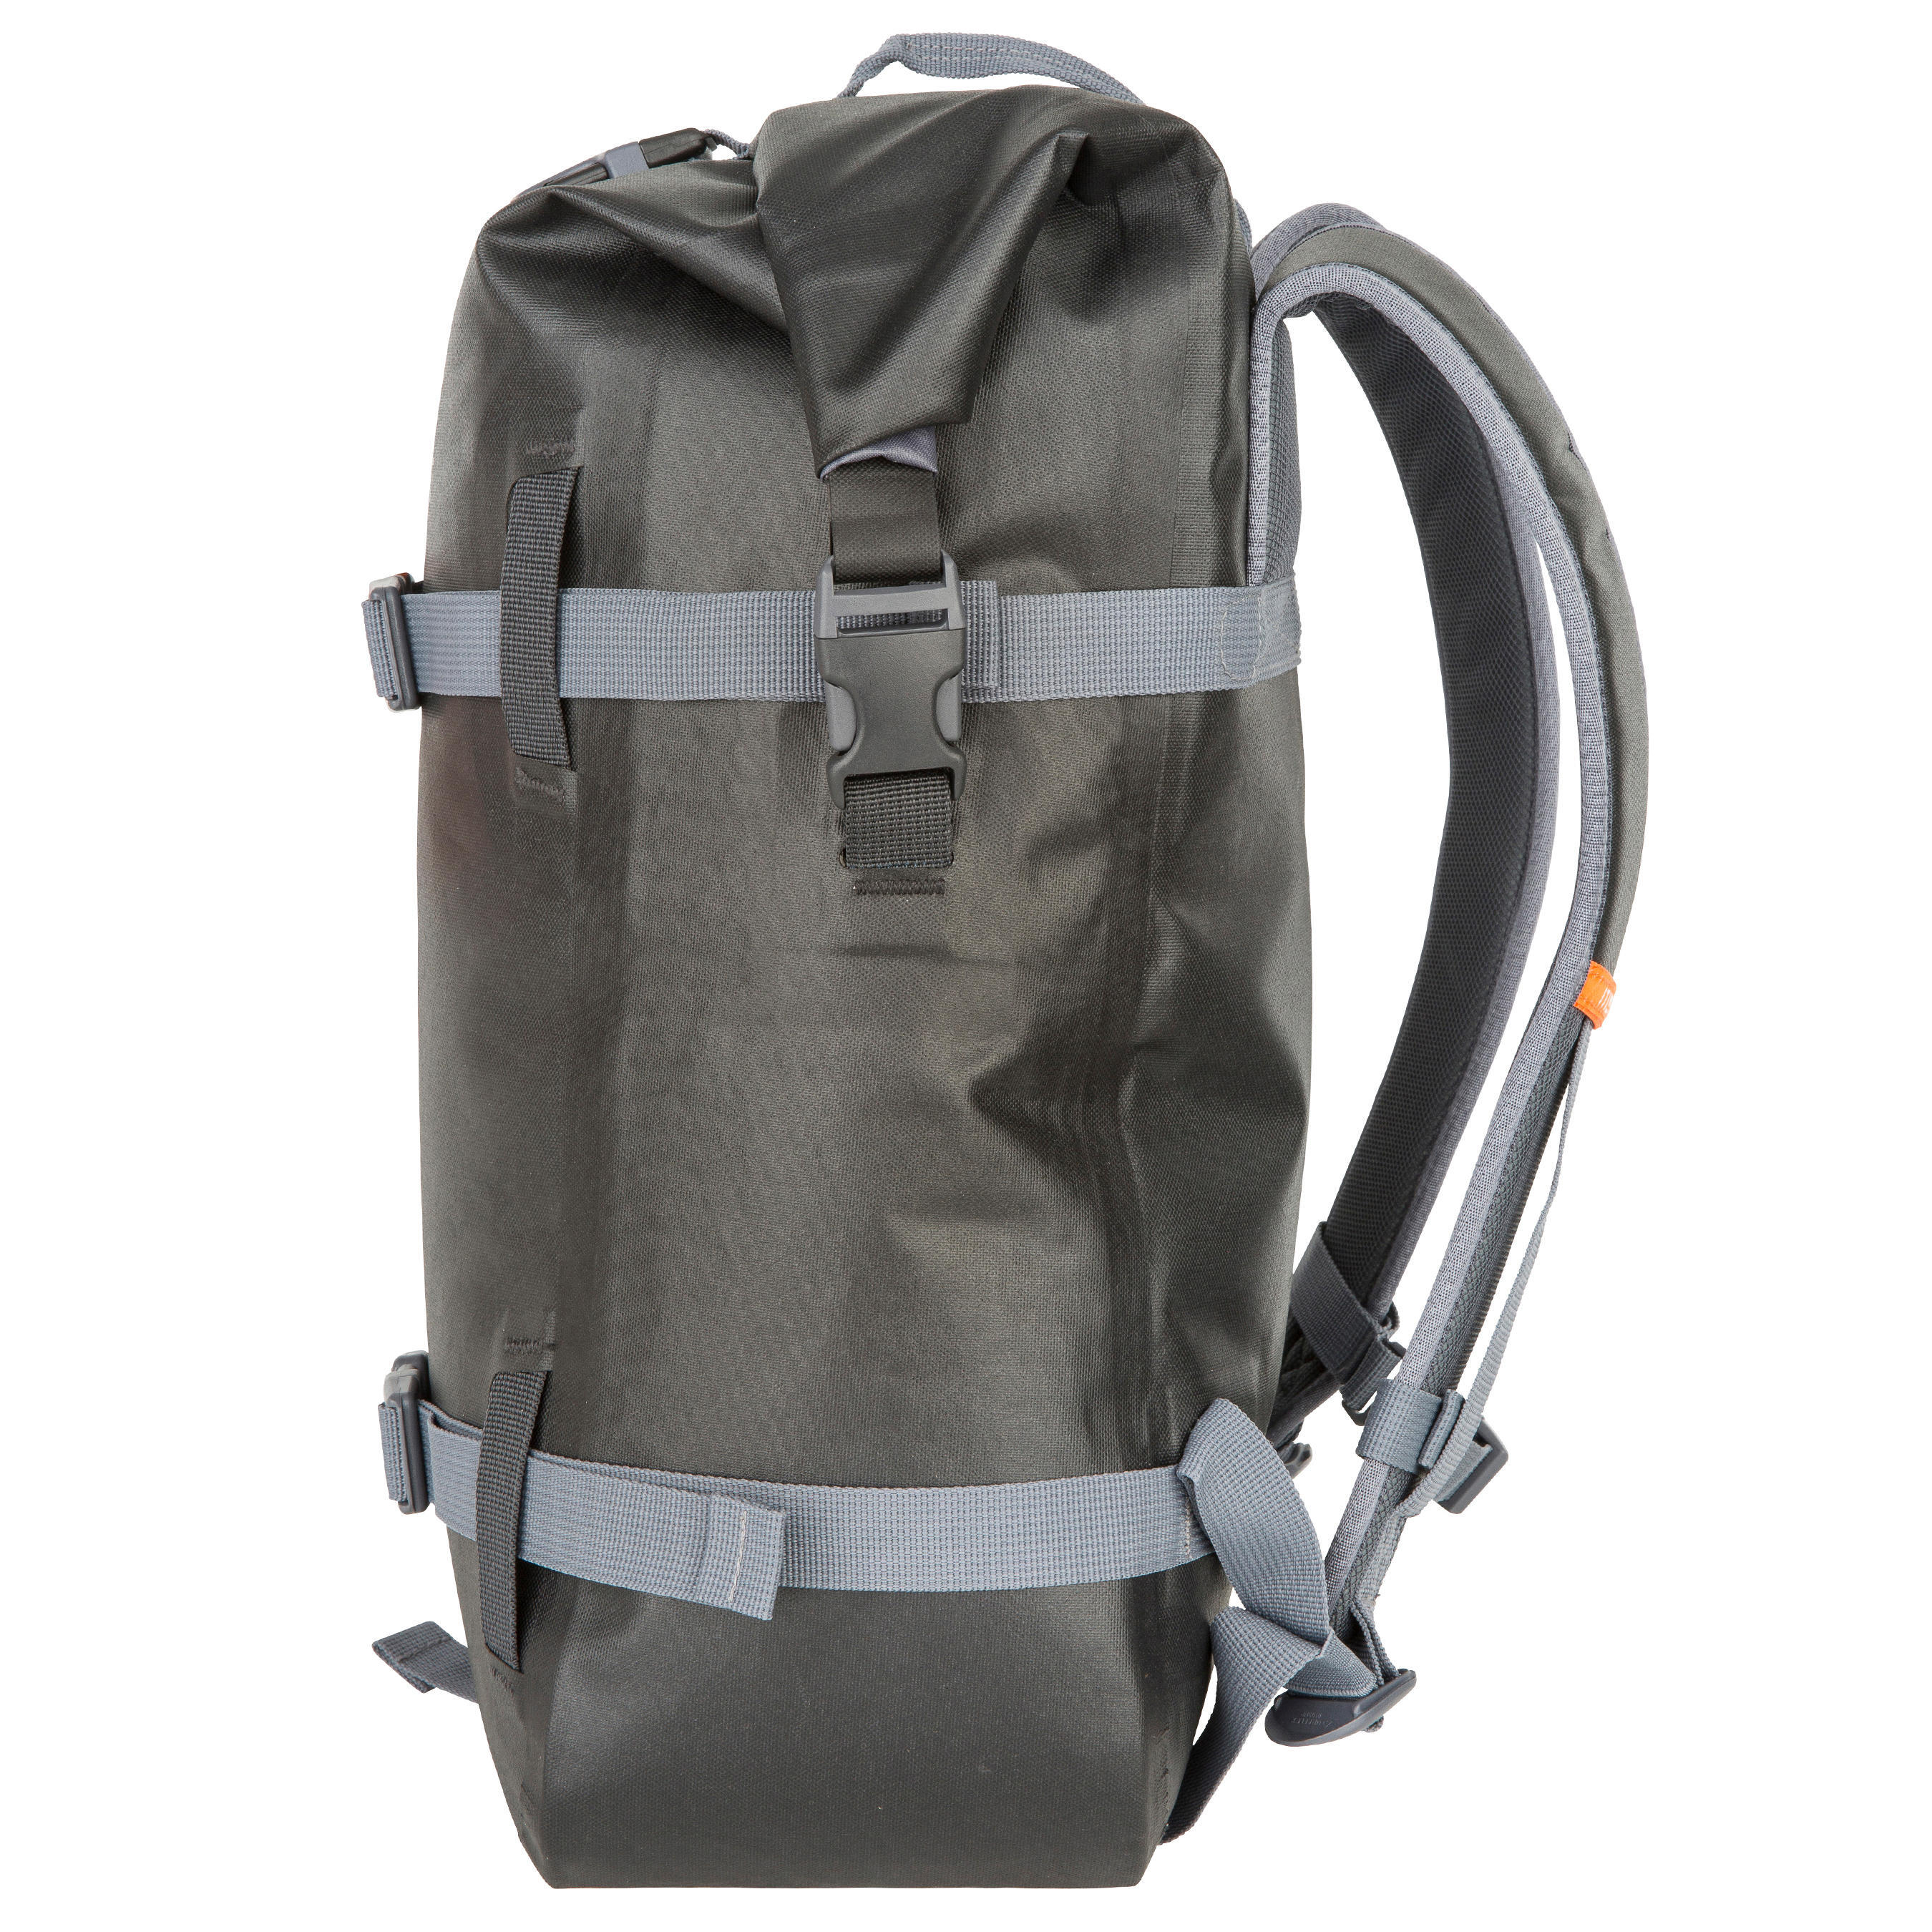 Waterproof Backpack 20L - Black 4/17